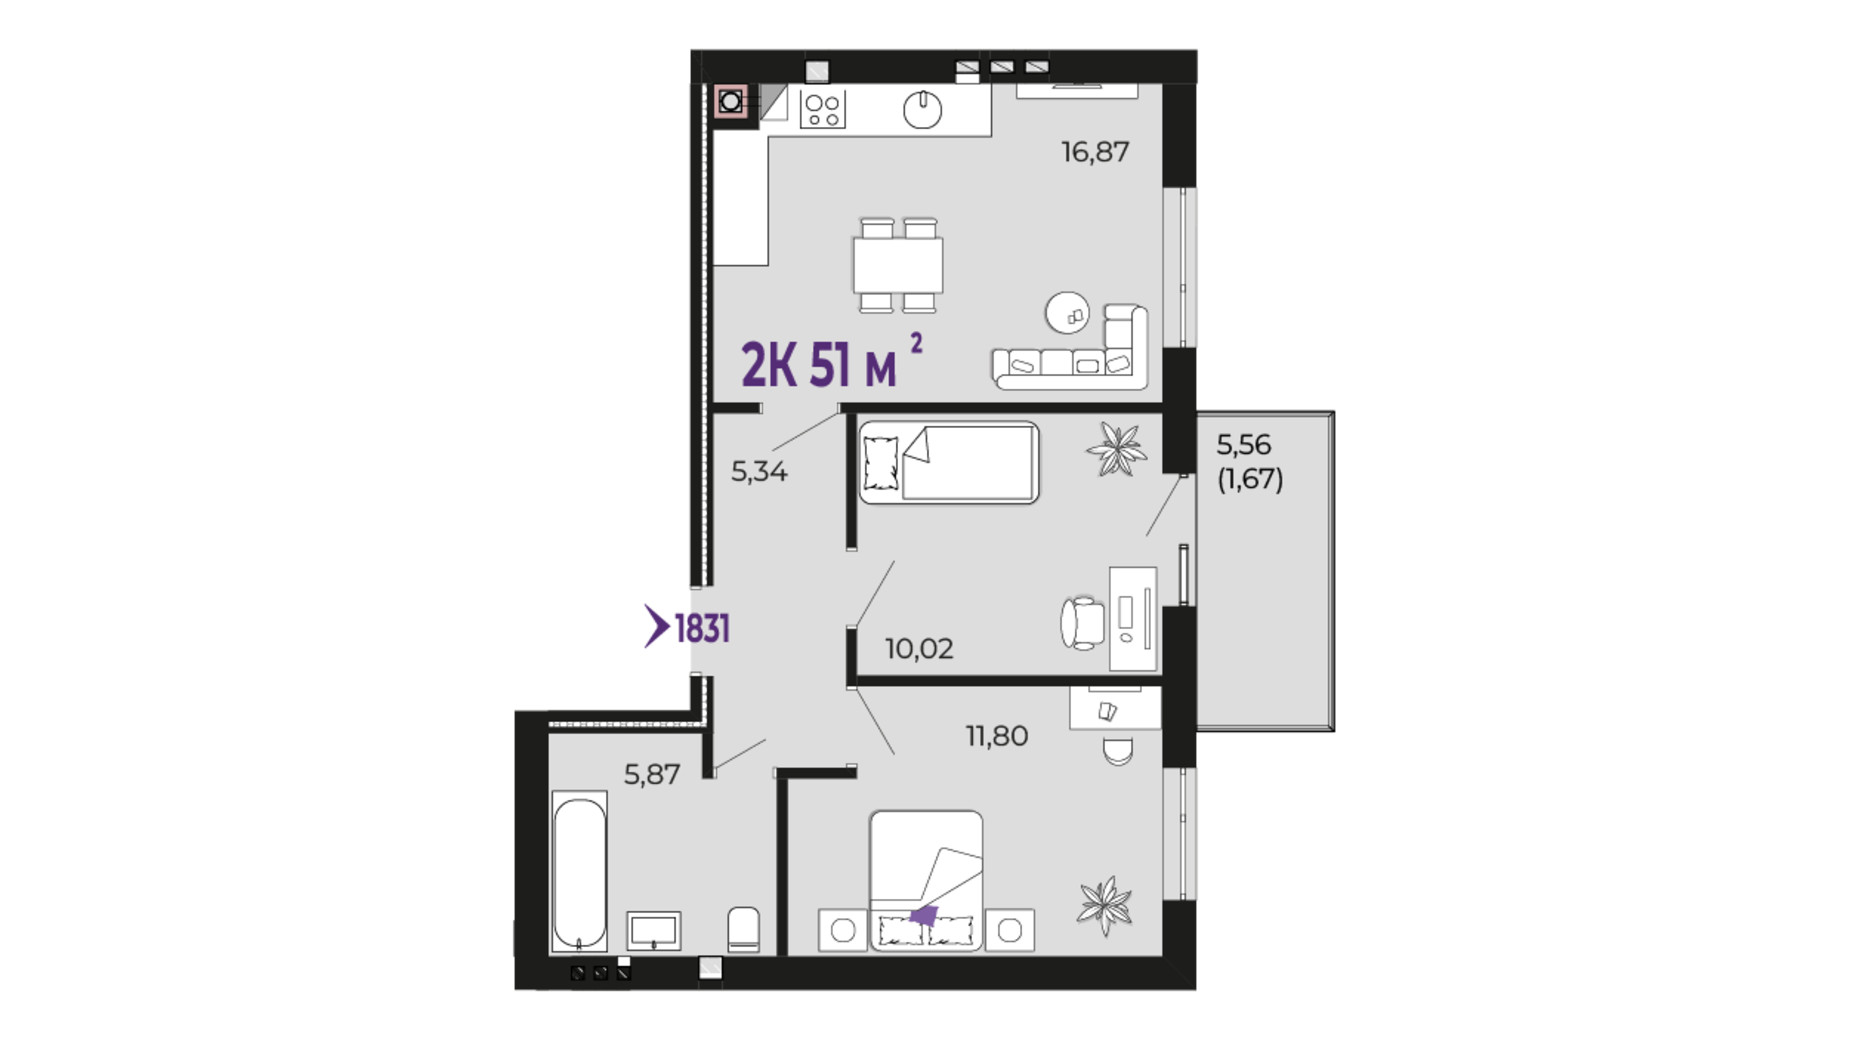 Планування 2-кімнатної квартири в ЖК Долішній 51 м², фото 690189